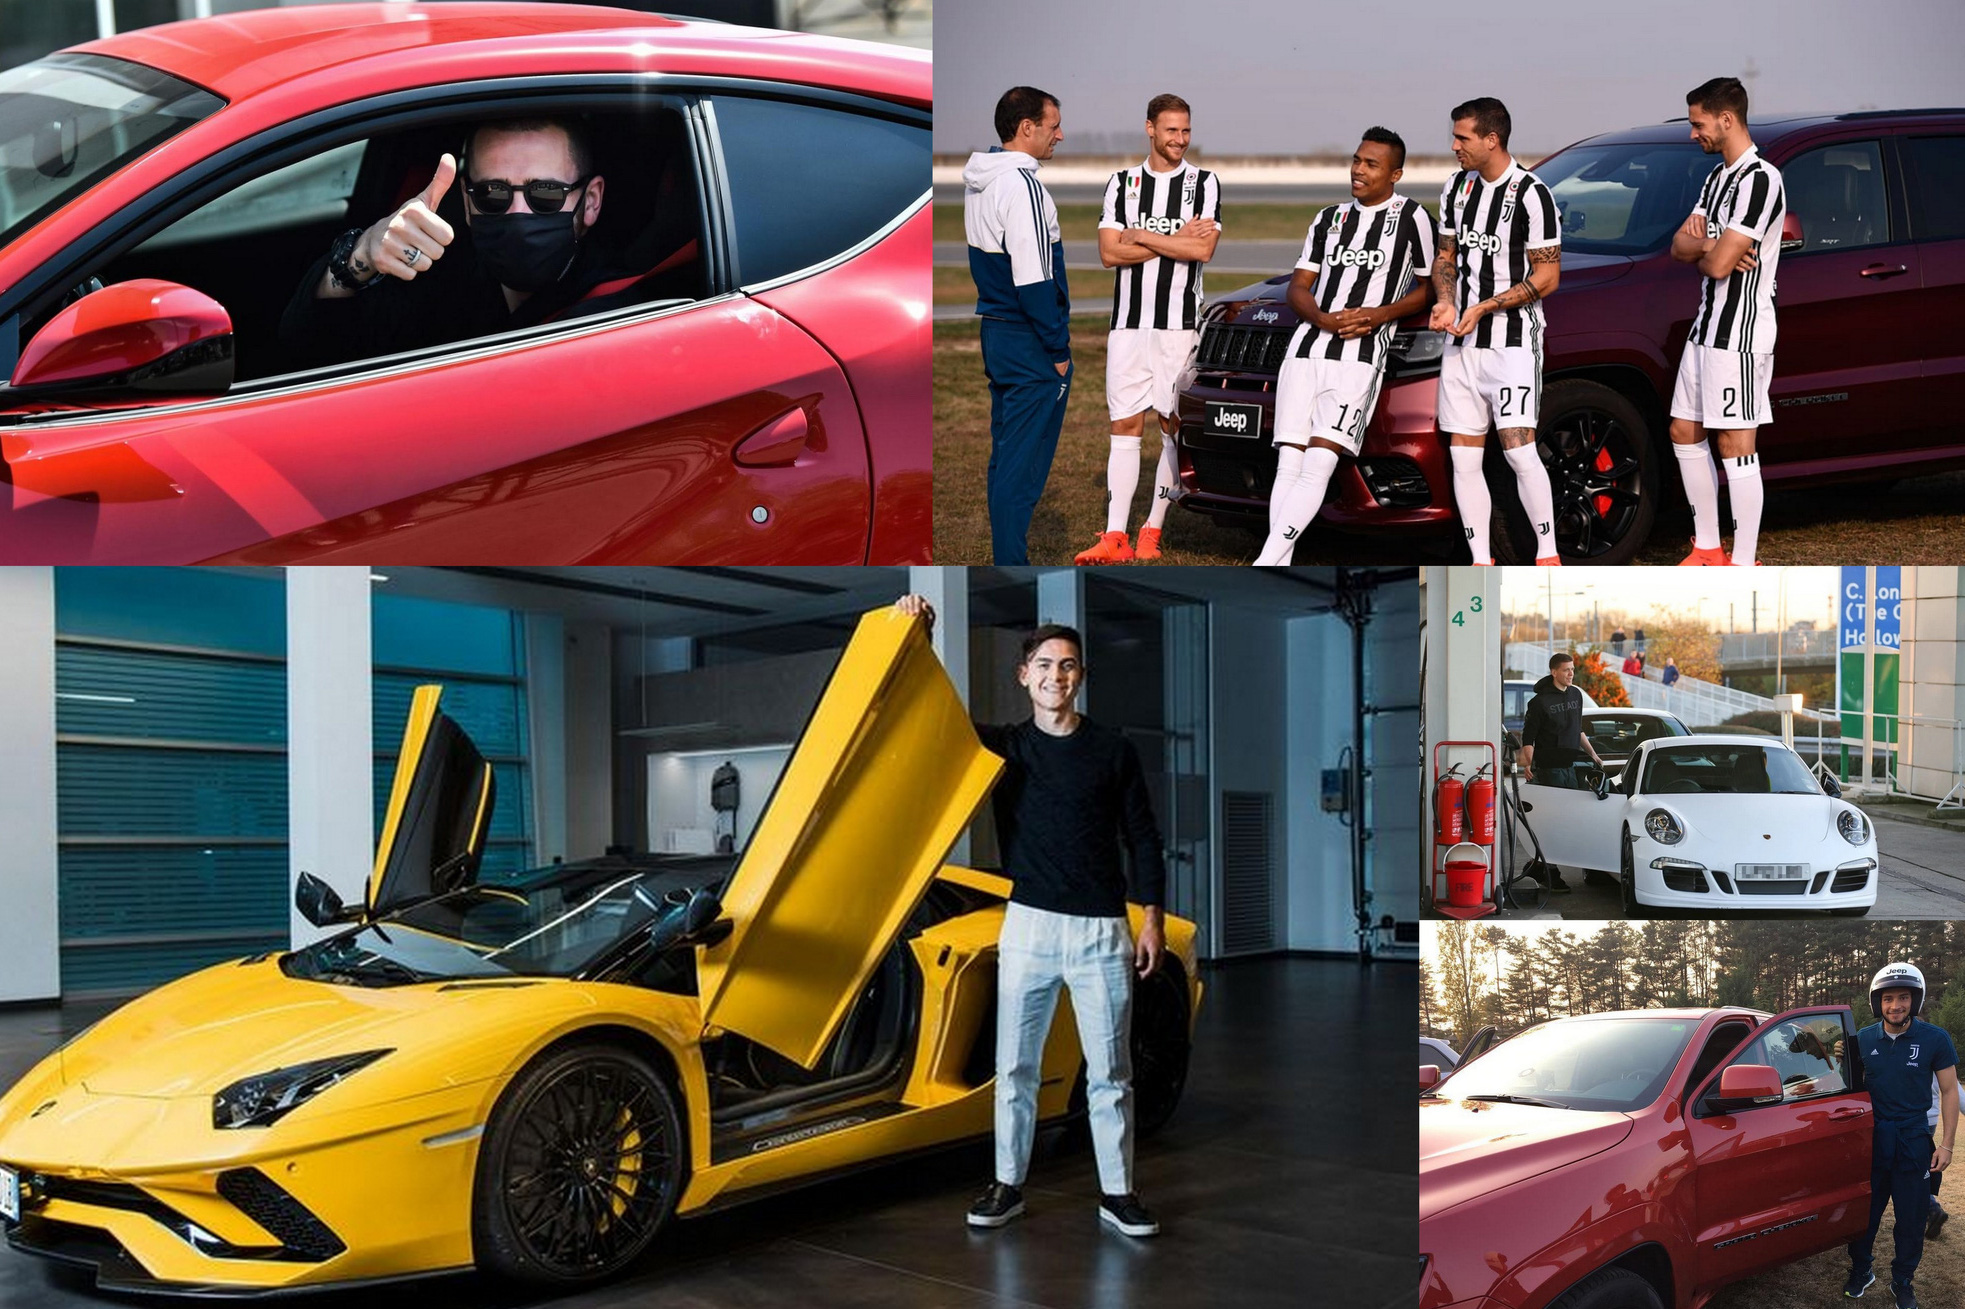 Chẳng cần Cristiano Ronaldo, Juventus vẫn có bộ sưu tập xe siêu khủng khiến bao người phải 'lóa mắt'